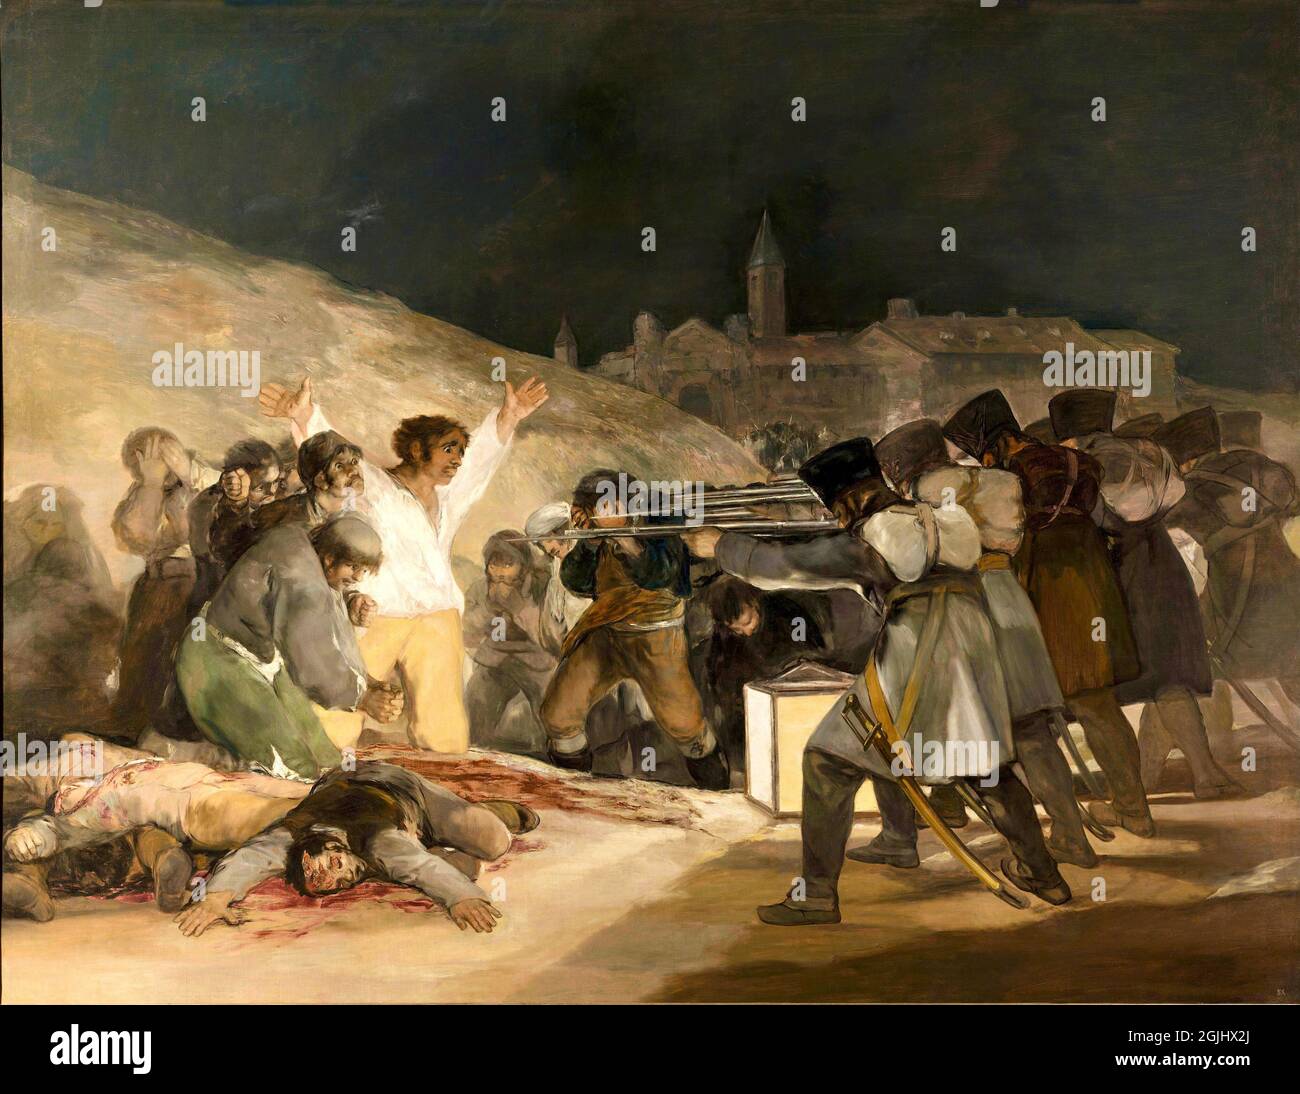 Obras de arte clásicas - El Tres de Mayo - Francisco de Goya - Tercero de Mayo - 1814 Foto de stock